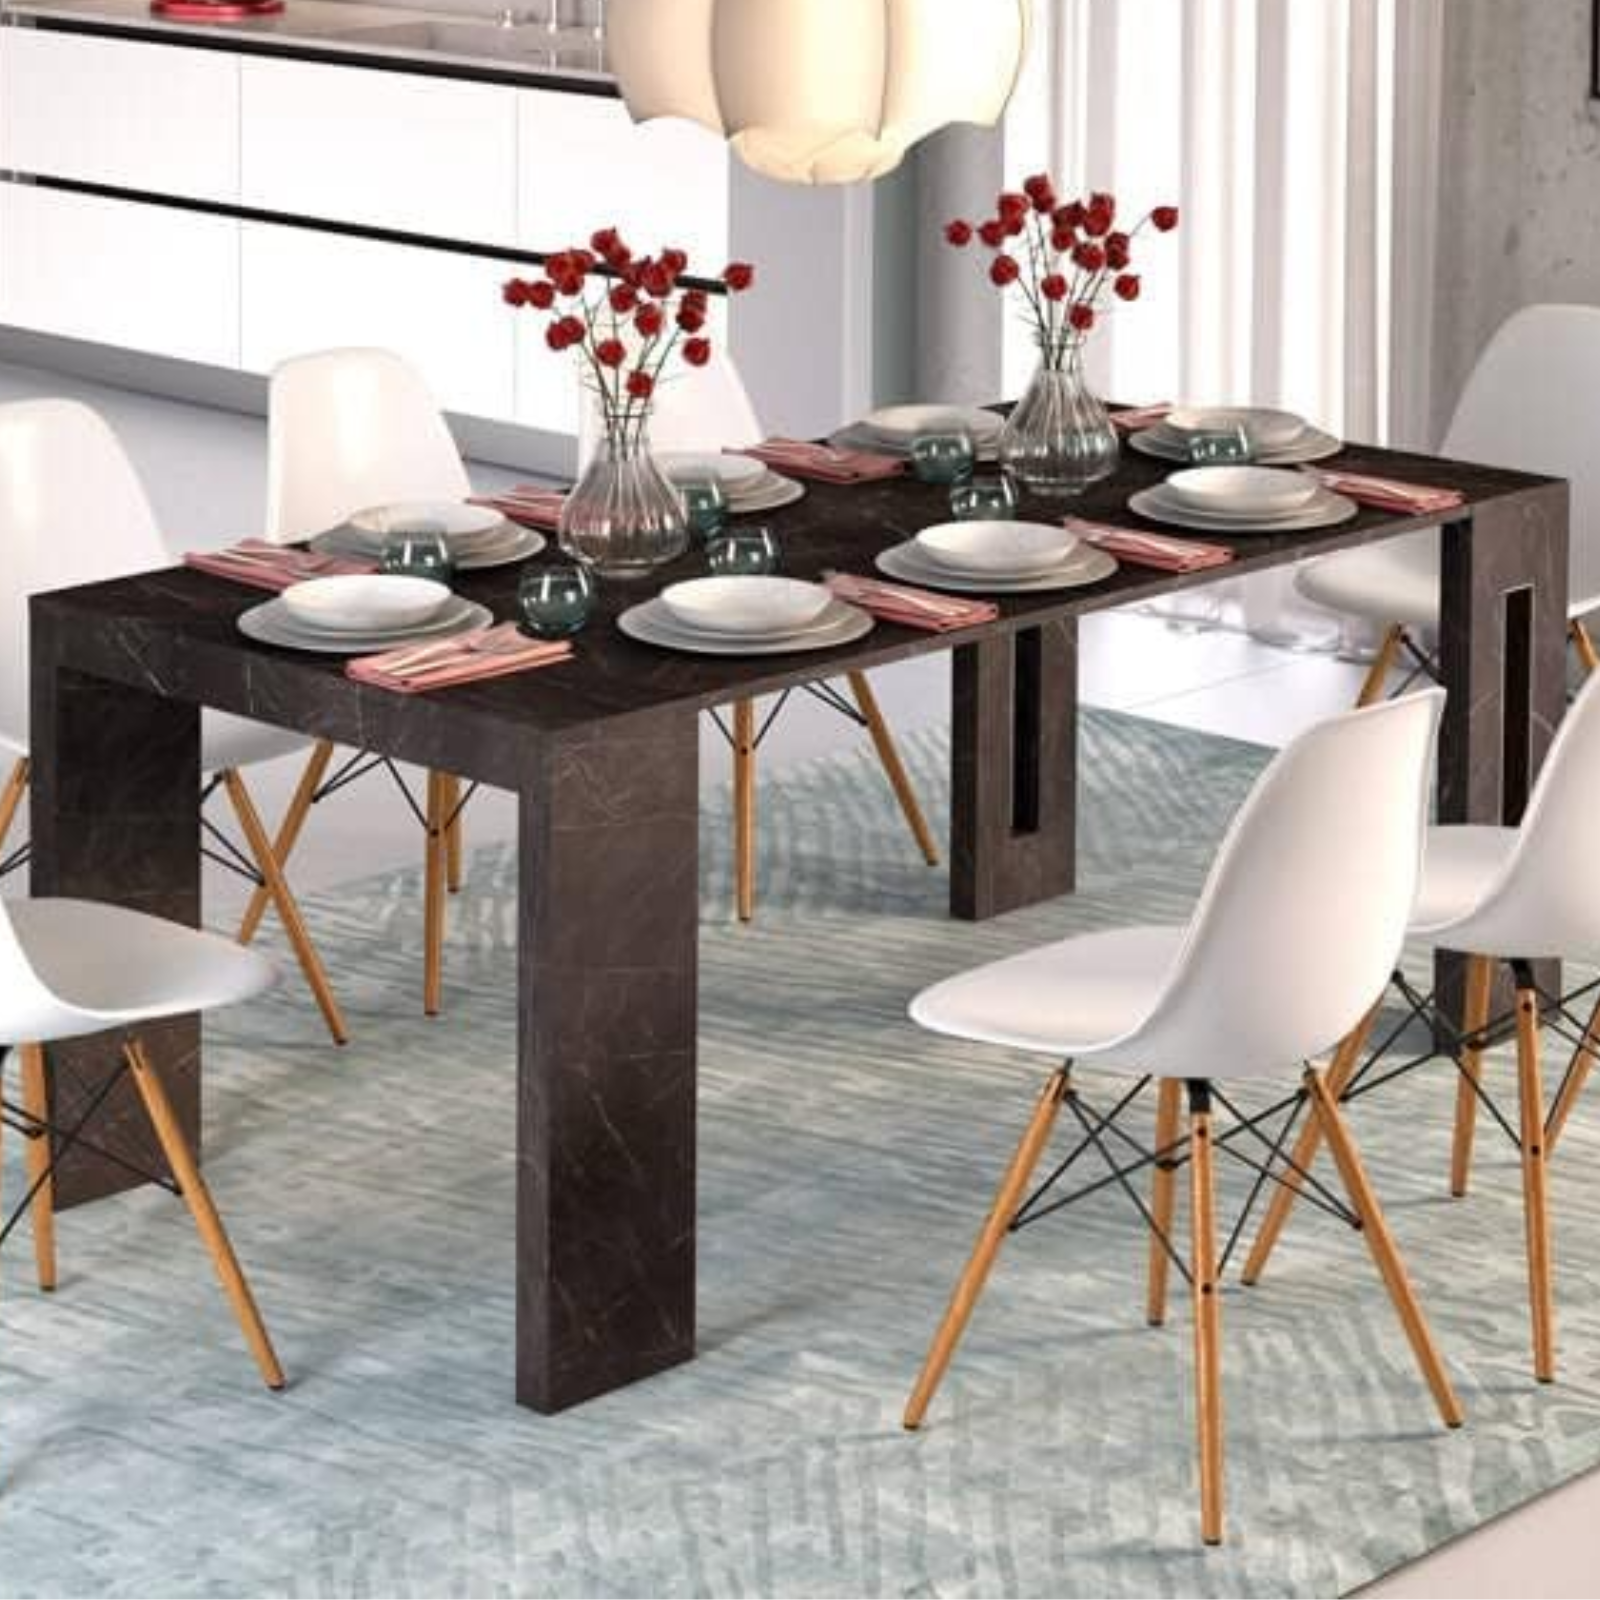 Tavolo consolle 44/186 cm in legno effetto marmo nero guide in alluminio - Extè